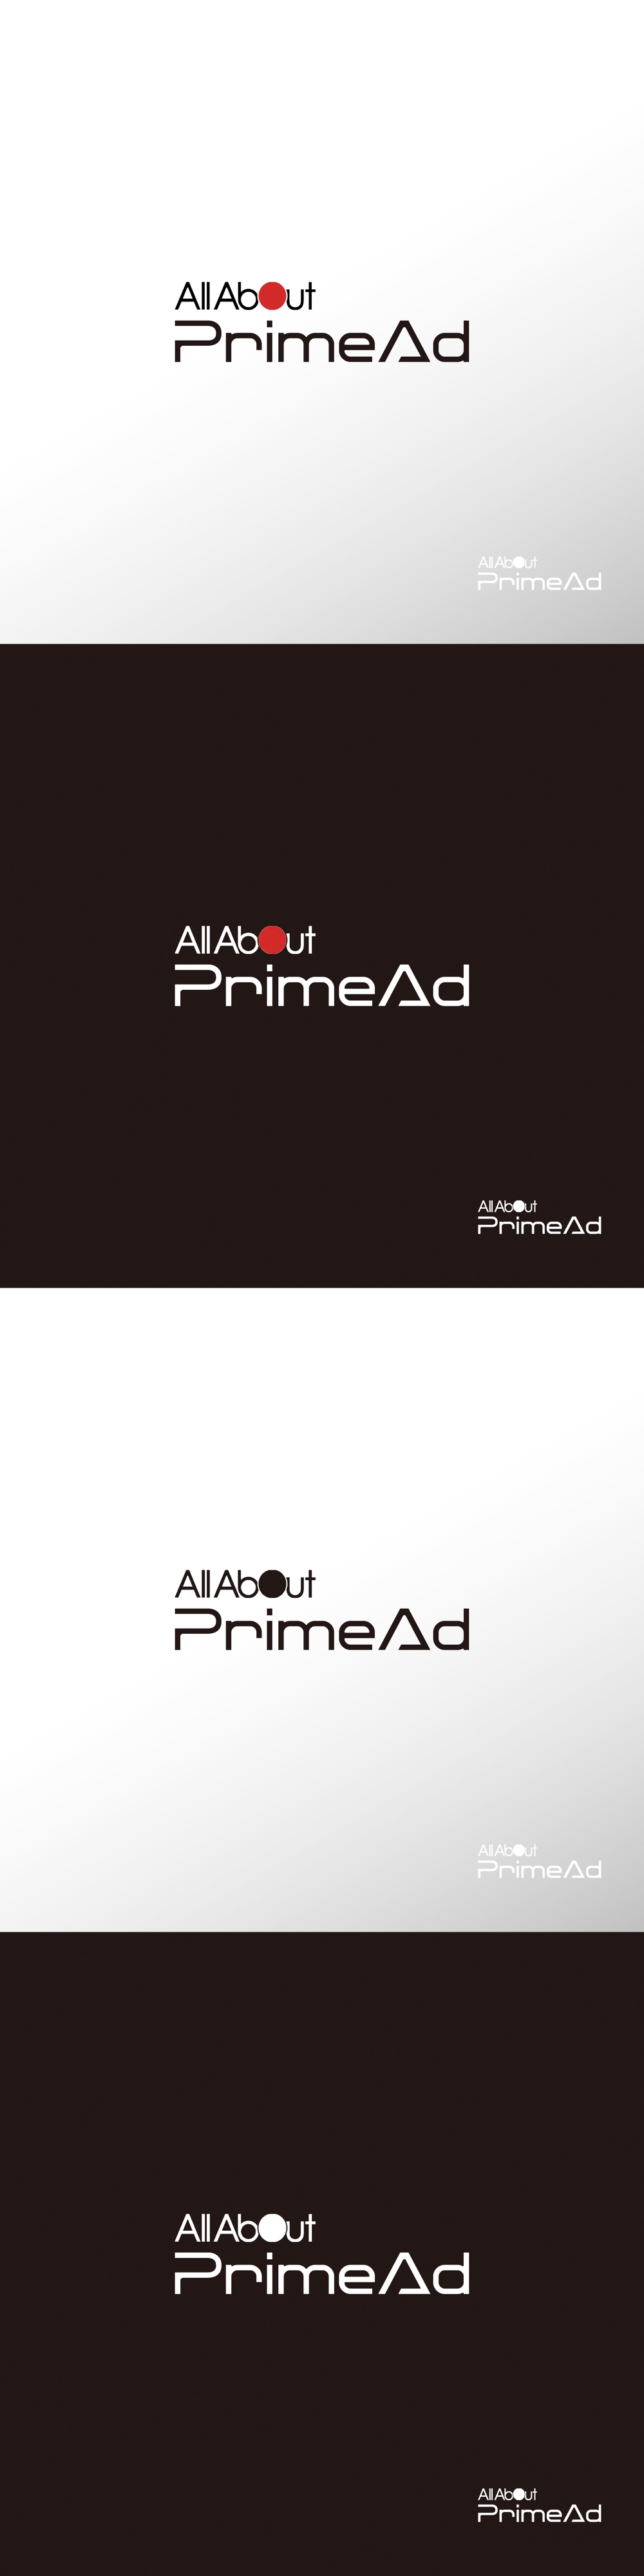 広告_PrimeAd_ロゴA1.jpg